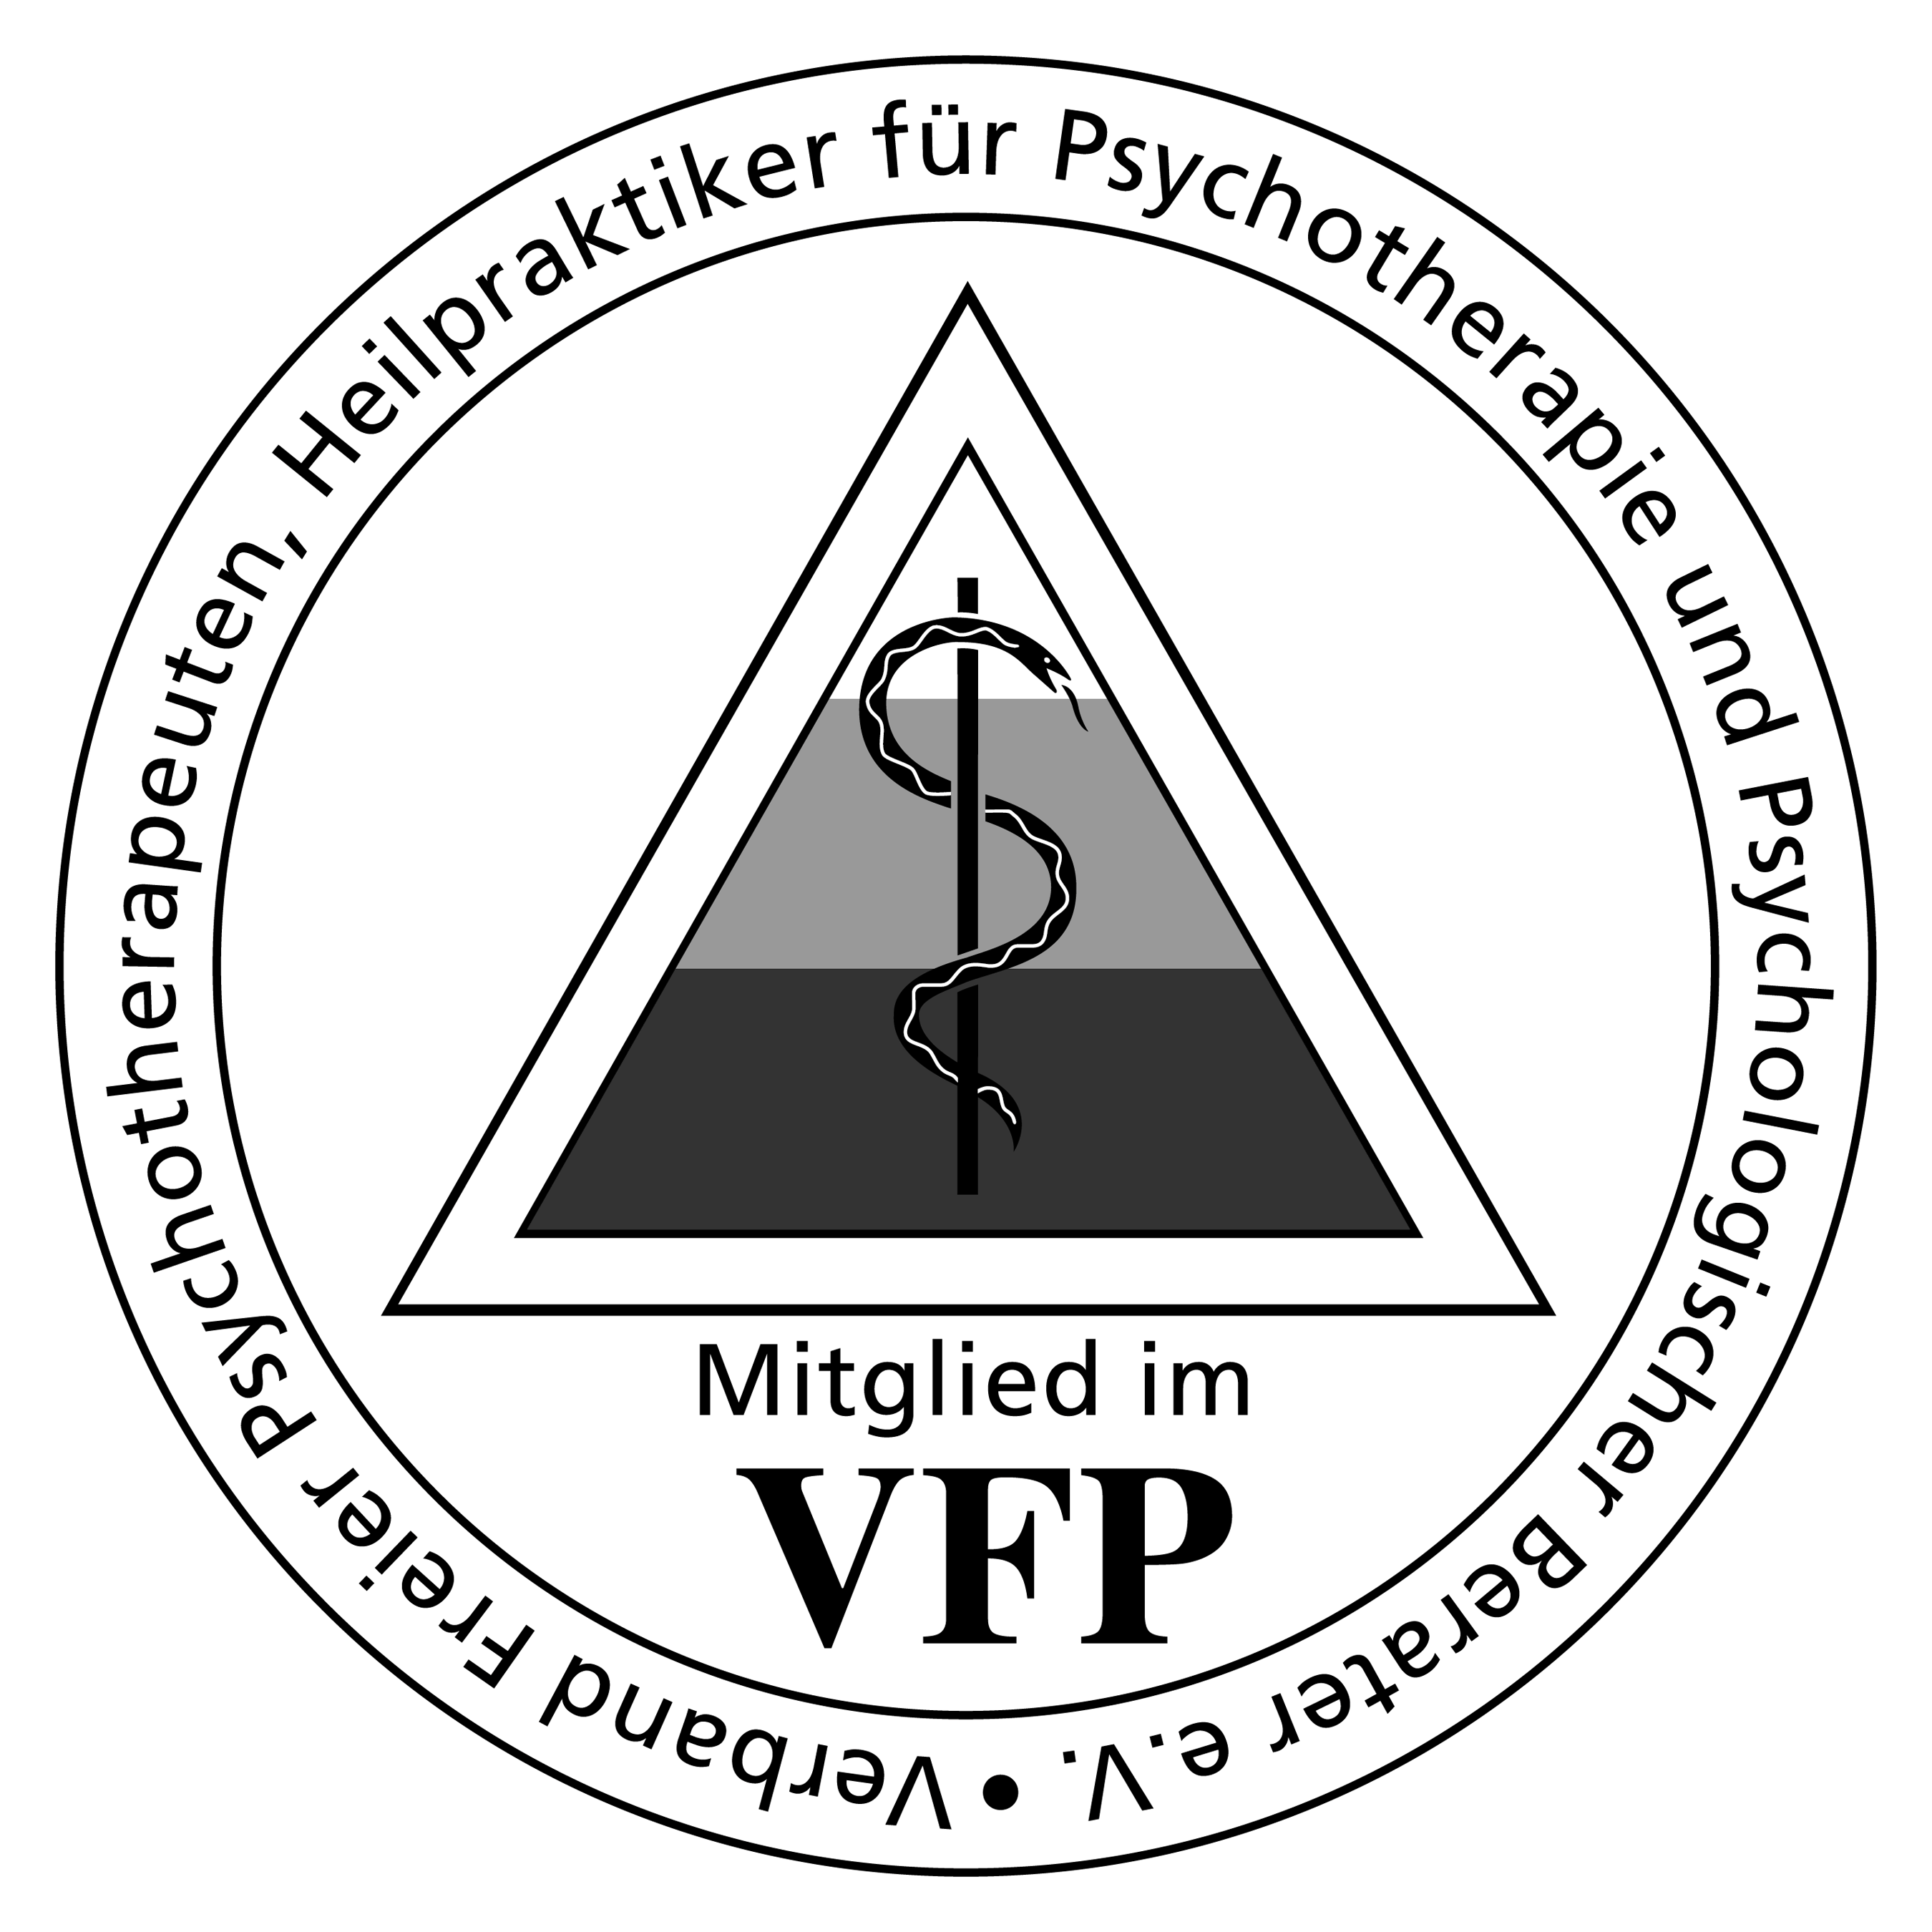 VFP - Verband Freier Psychotherapeuten, Heilpraktiker für Psychotherapie und Psychologischer Berater e.V.